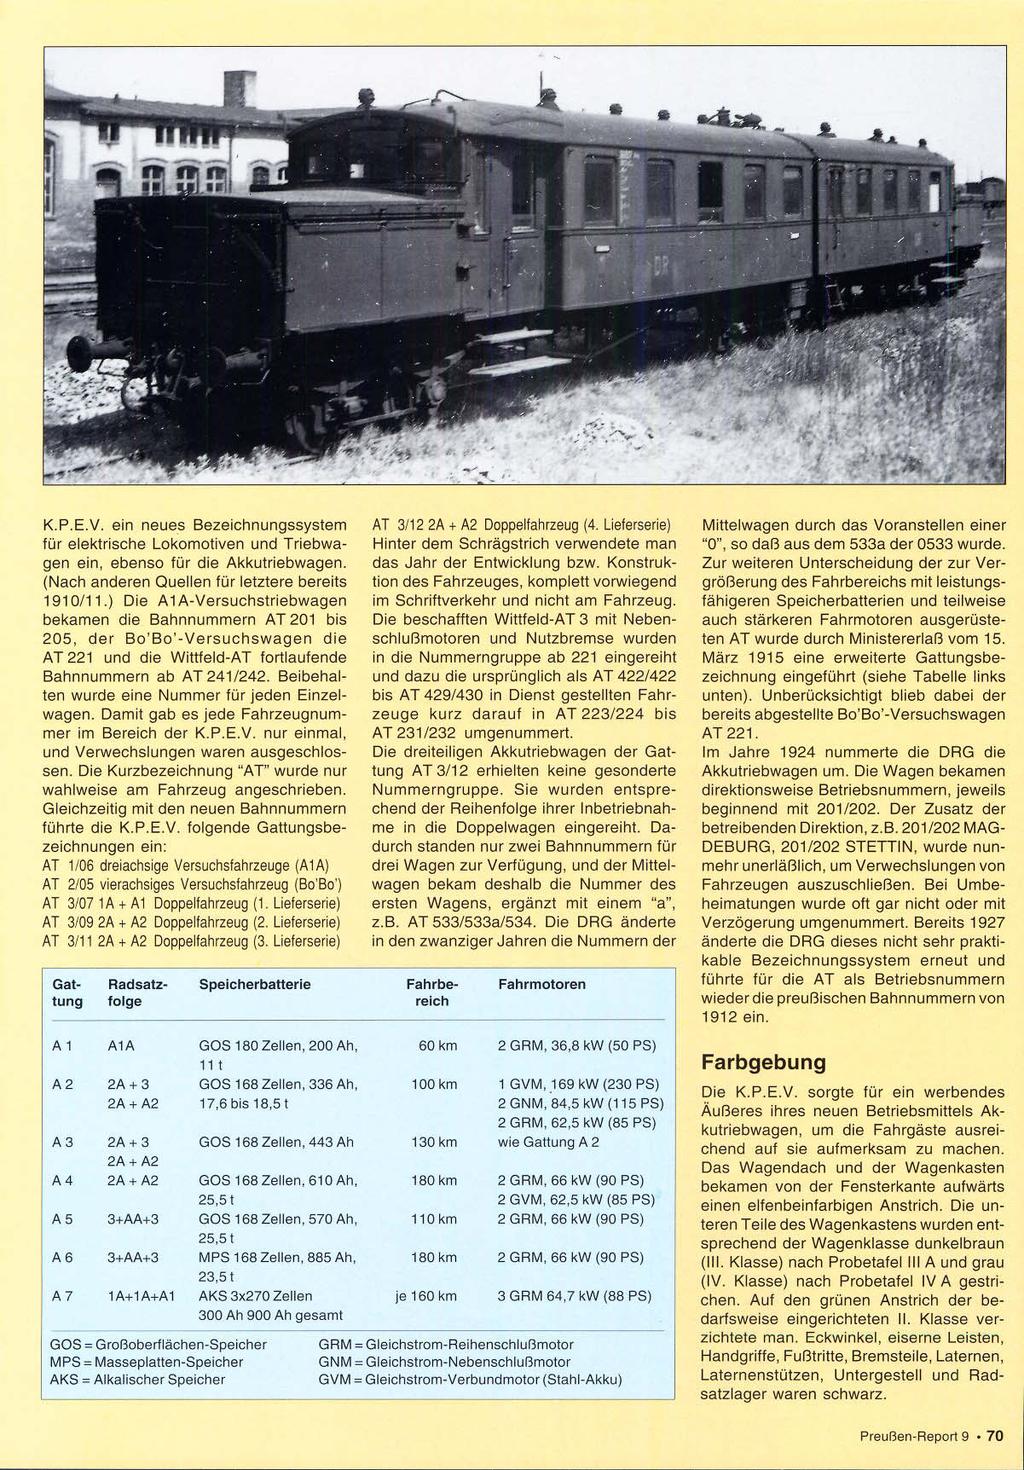 K.P.E.V. ein neues Bezeichnungssystem für elektrische Lokomotiven und Triebwagen ein, ebenso für die Akkutriebwagen. (Nach anderen Quellen für letztere bereits 191 O/l 1.